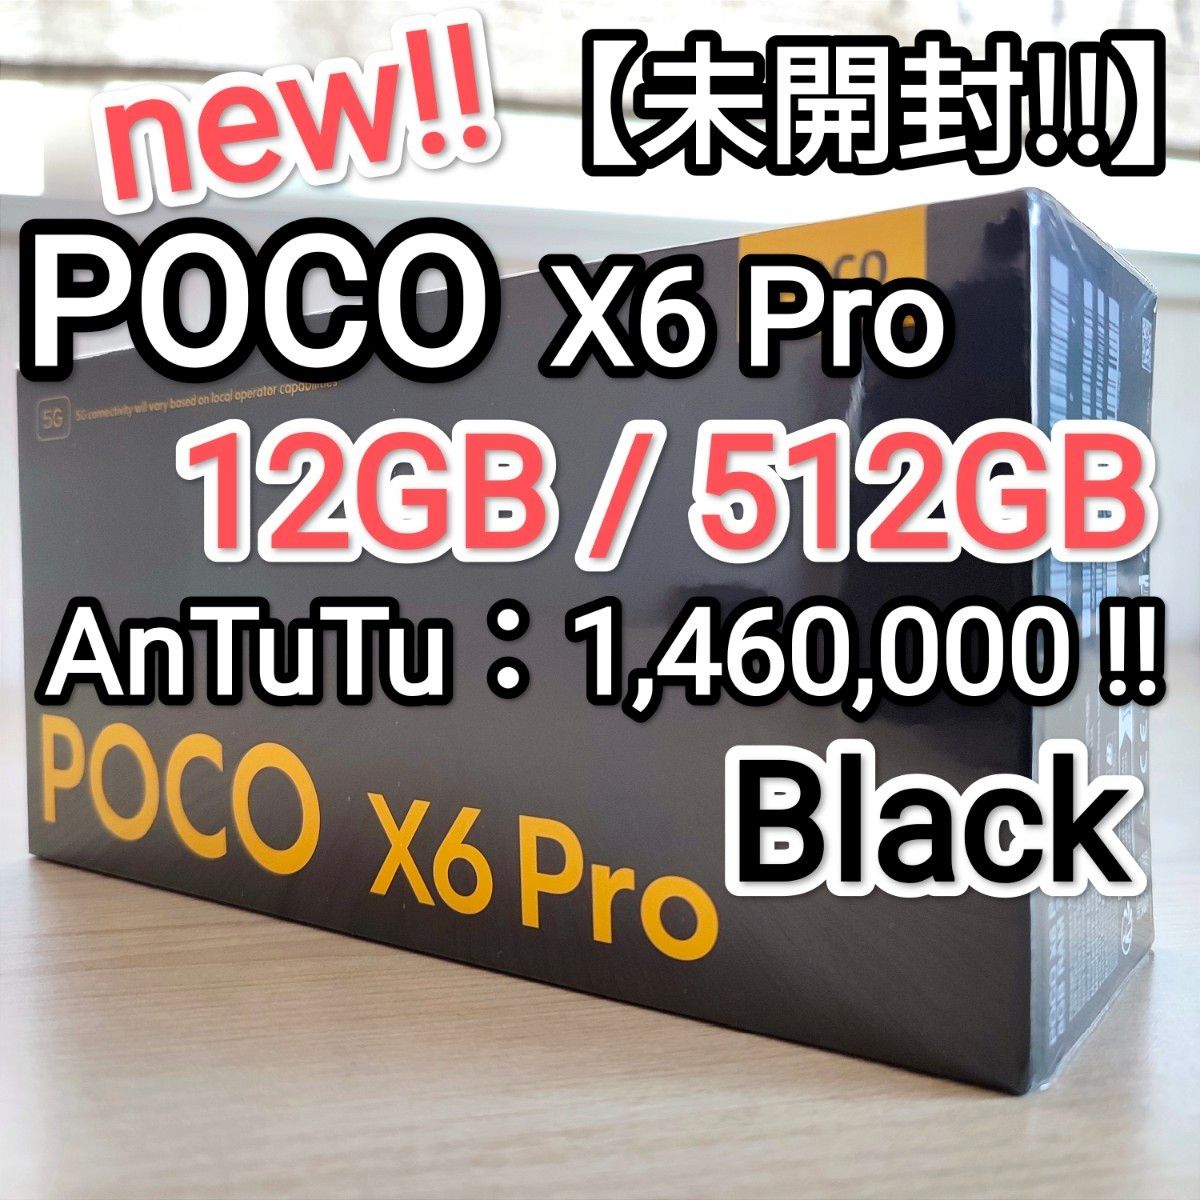 【未開封!!】Xiaomi POCO X6 Pro 5G Black 12GB/512GB AnTuTu 1,460,000!!②